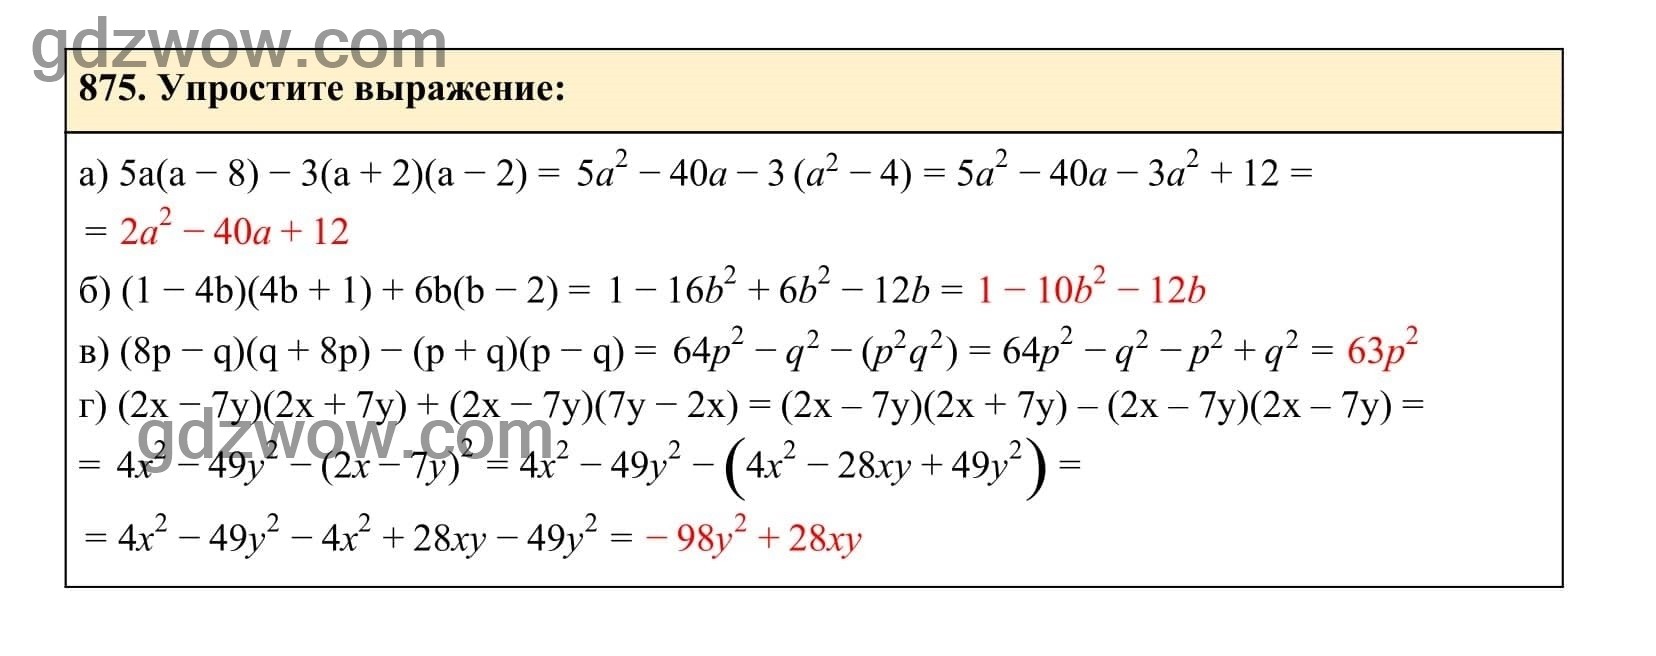 Упражнение 875 - ГДЗ по Алгебре 7 класс Учебник Макарычев (решебник) - GDZwow